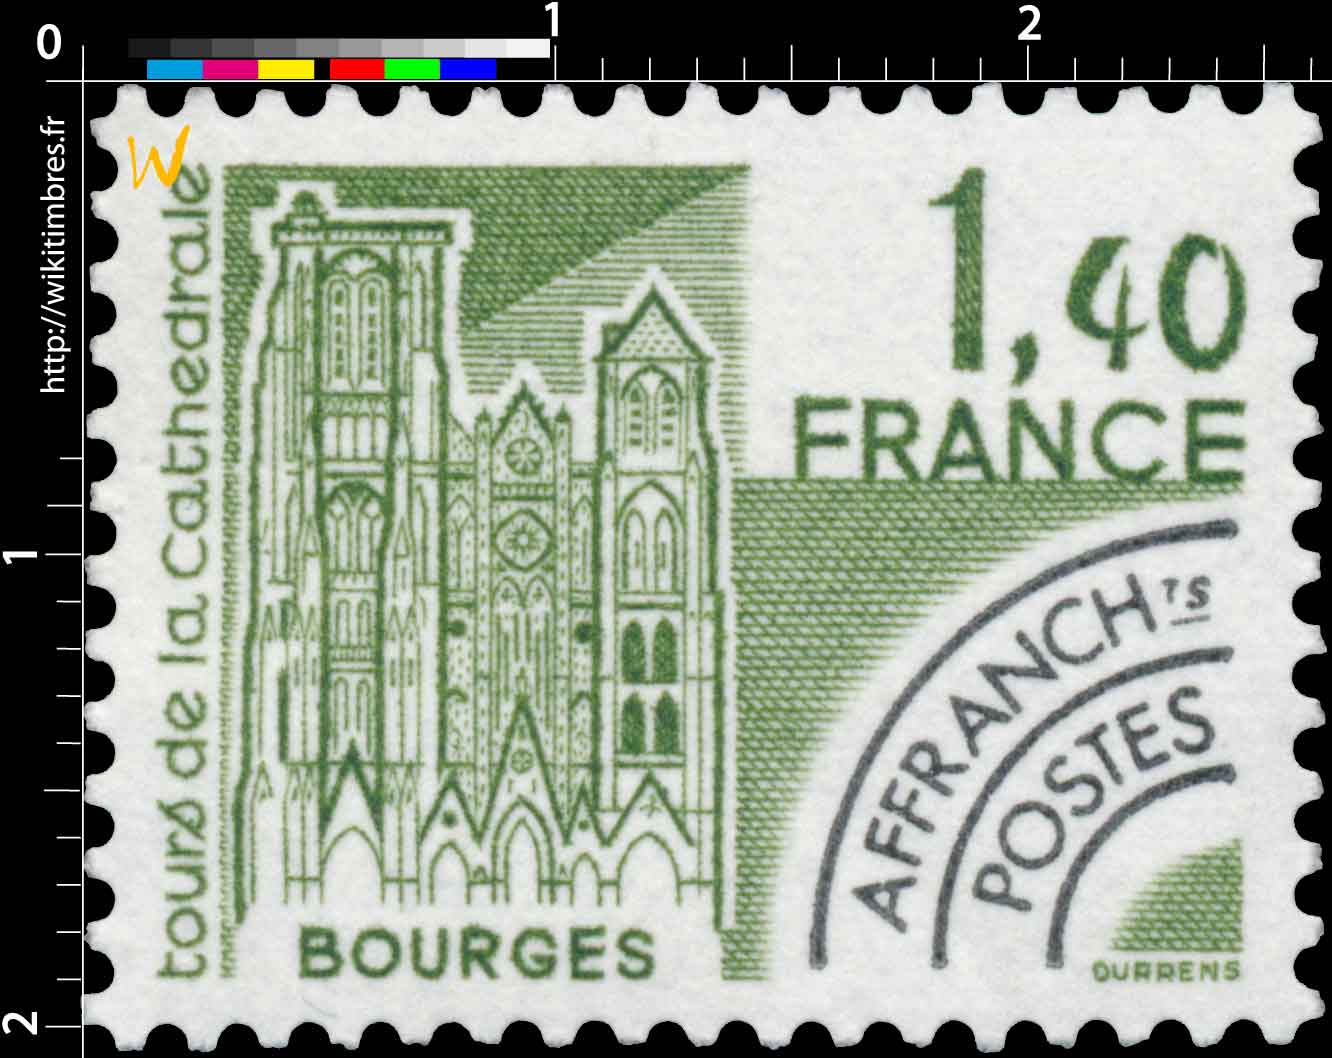 Tours de la cathédrale Bourges